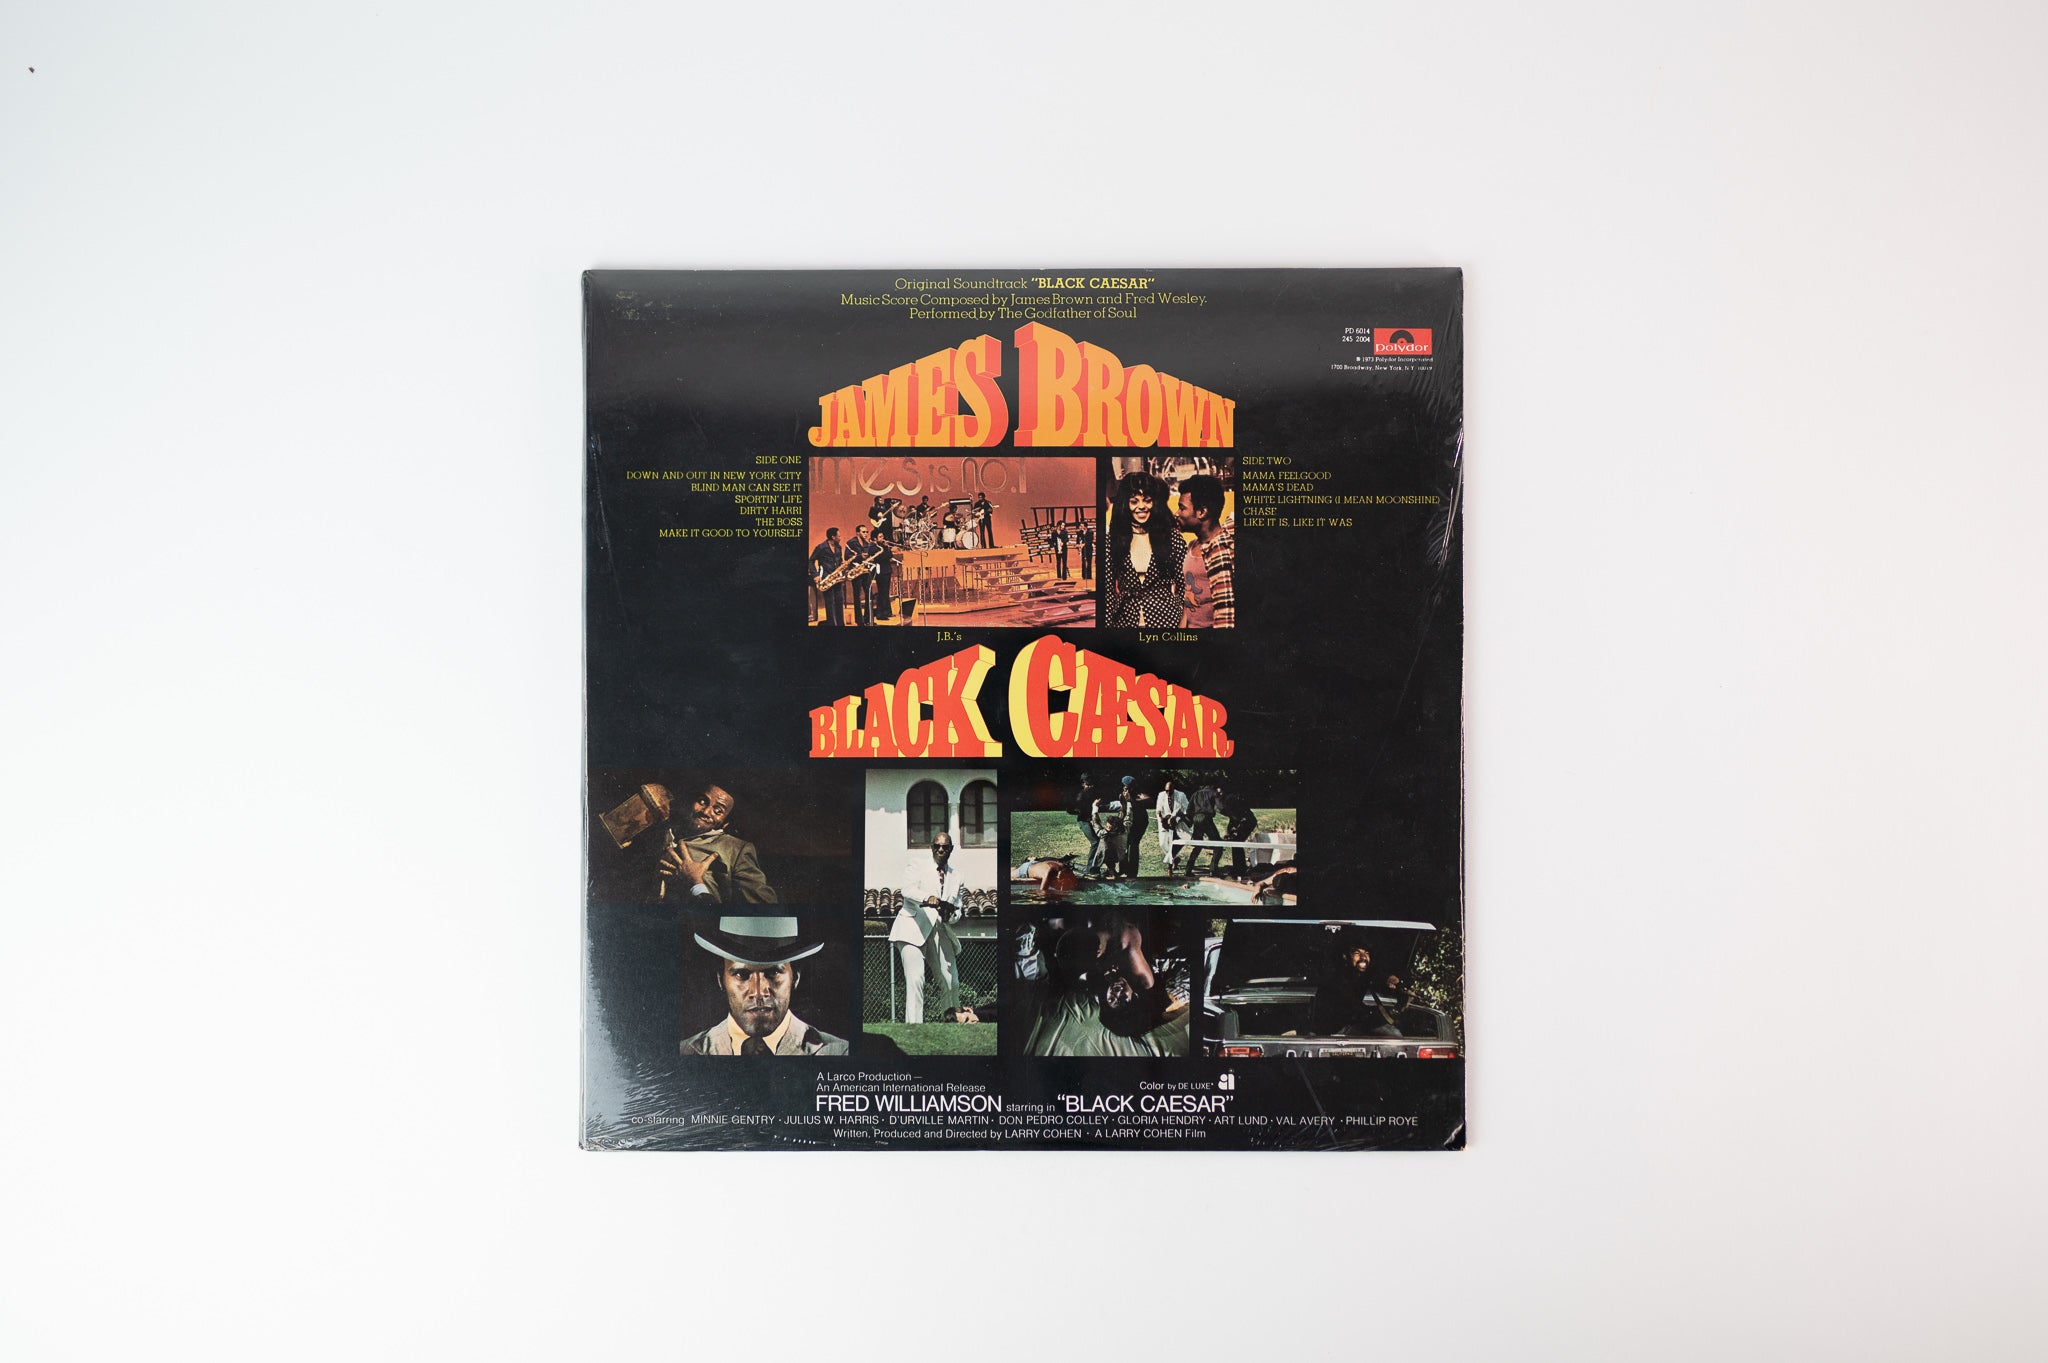 James Brown - Black Caesar (Original Soundtrack) on Polydor - Sealed Promo